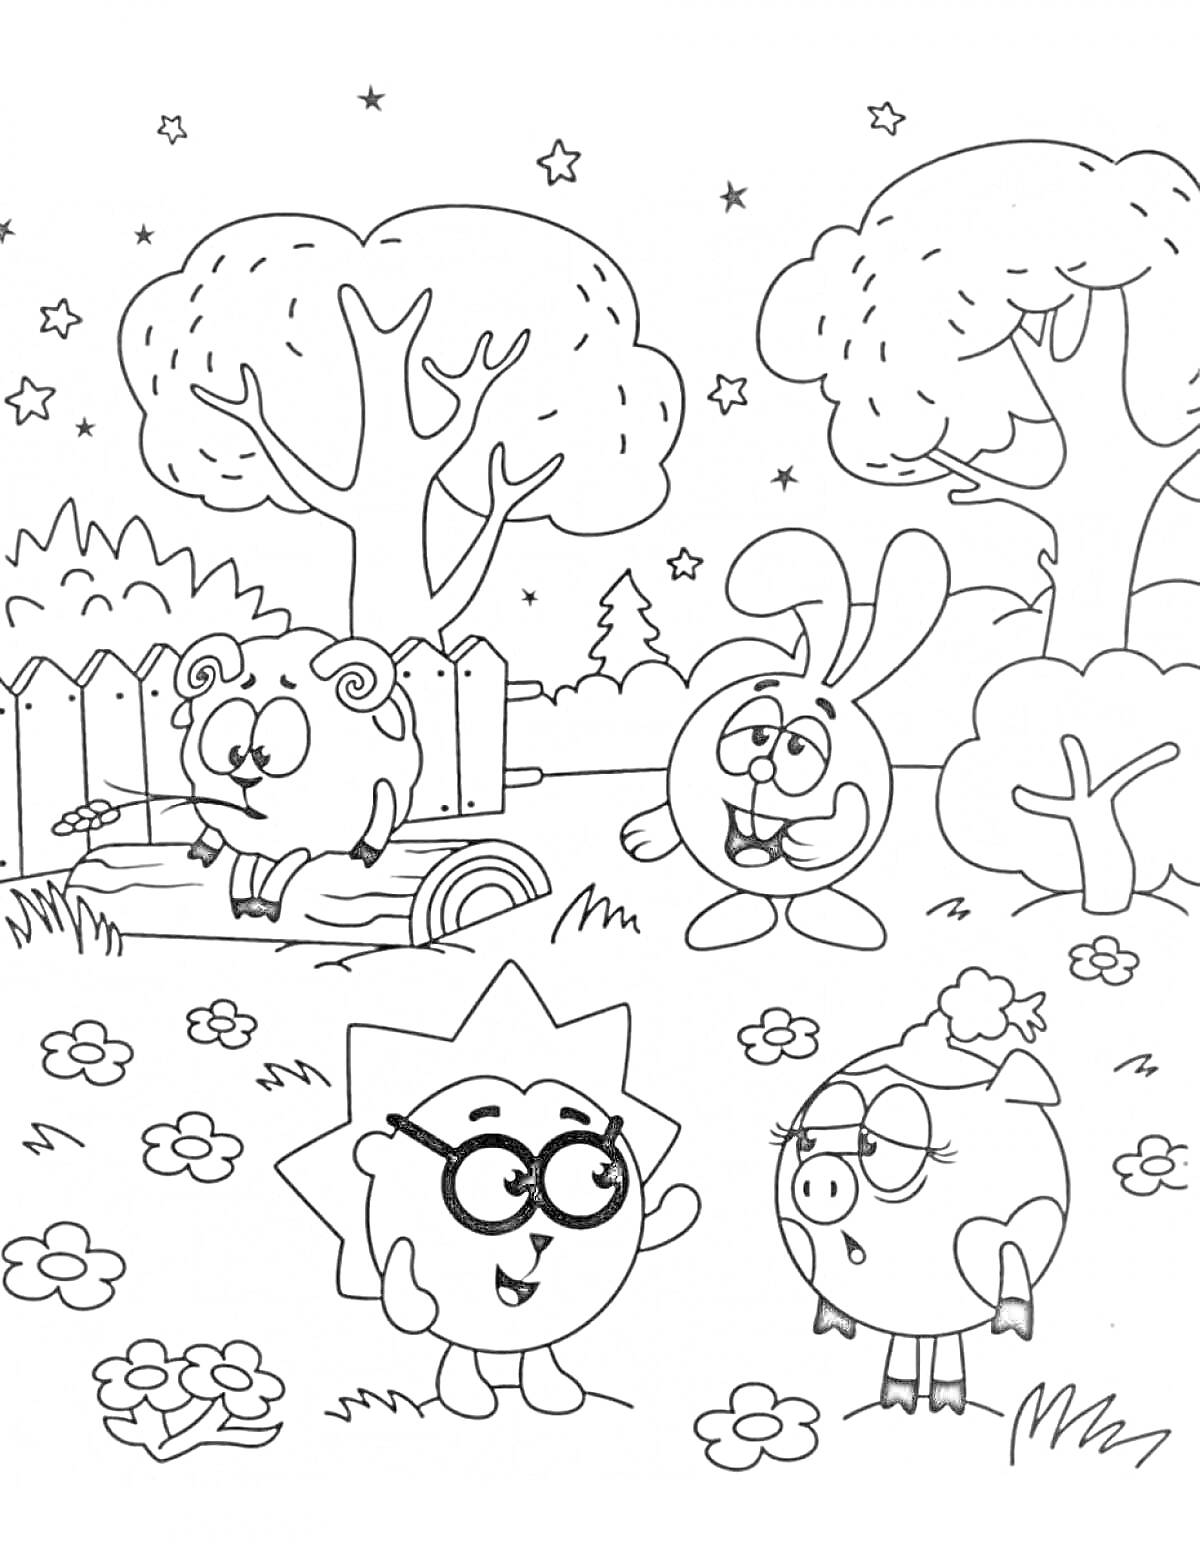 Раскраска Смешарики на улице: Ёжик, Крош, Лосяш и Бараш в цветочном саду с деревьями, забором и звездами на небе